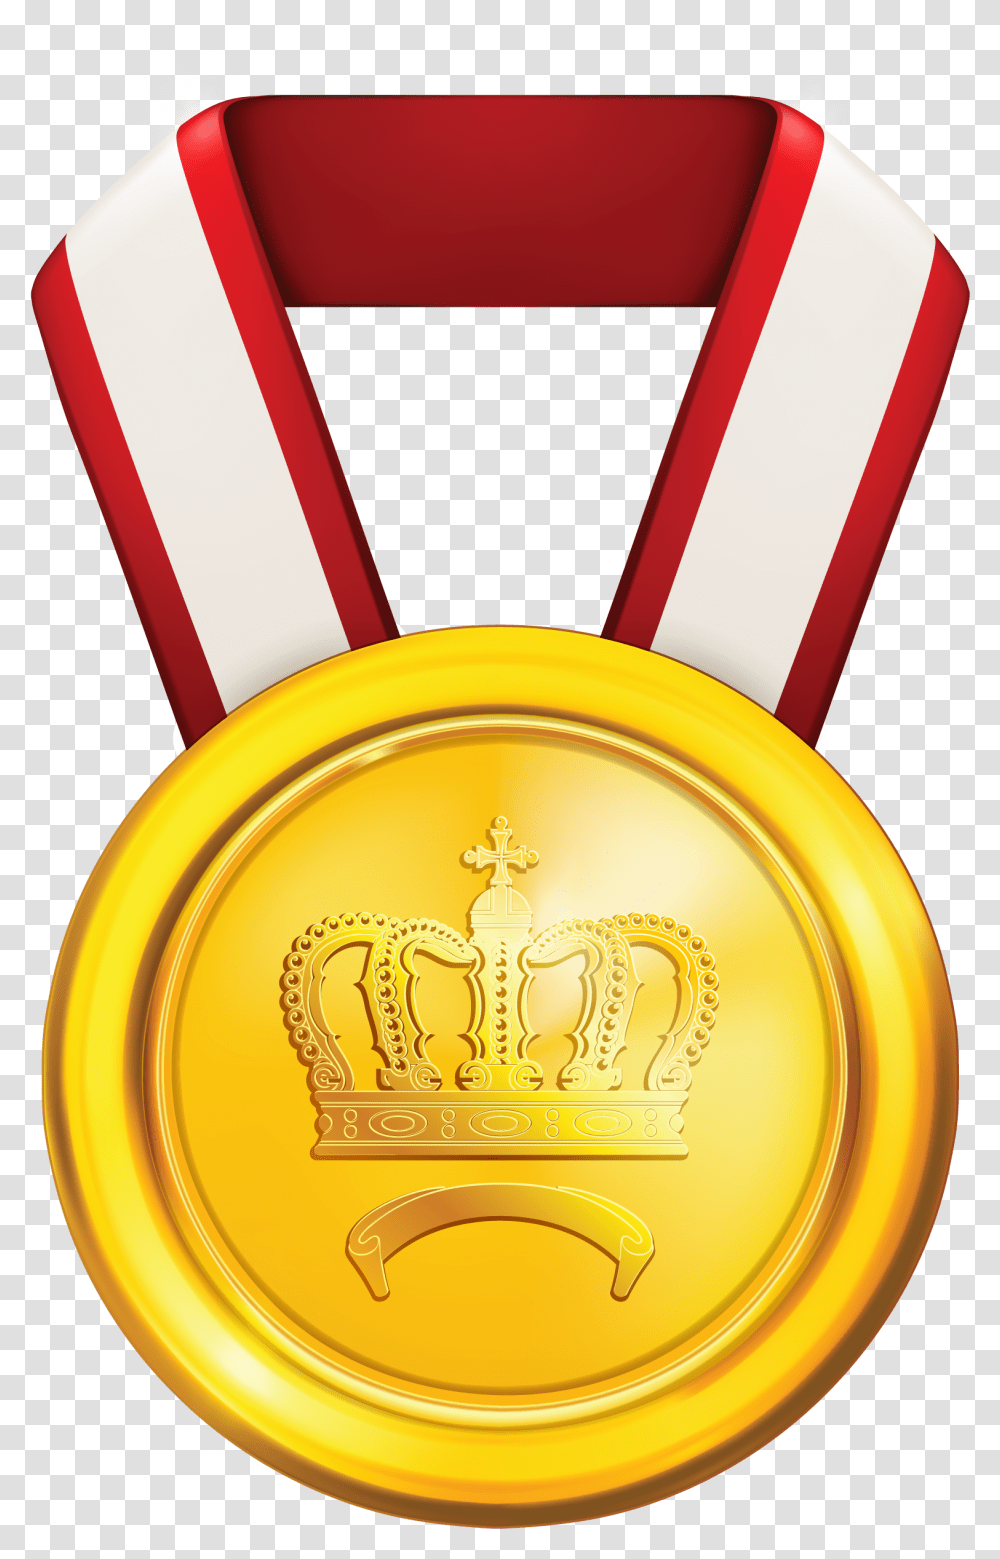 Gold Medal Medal Of Honour Clip Art, Trophy, Emblem Transparent Png